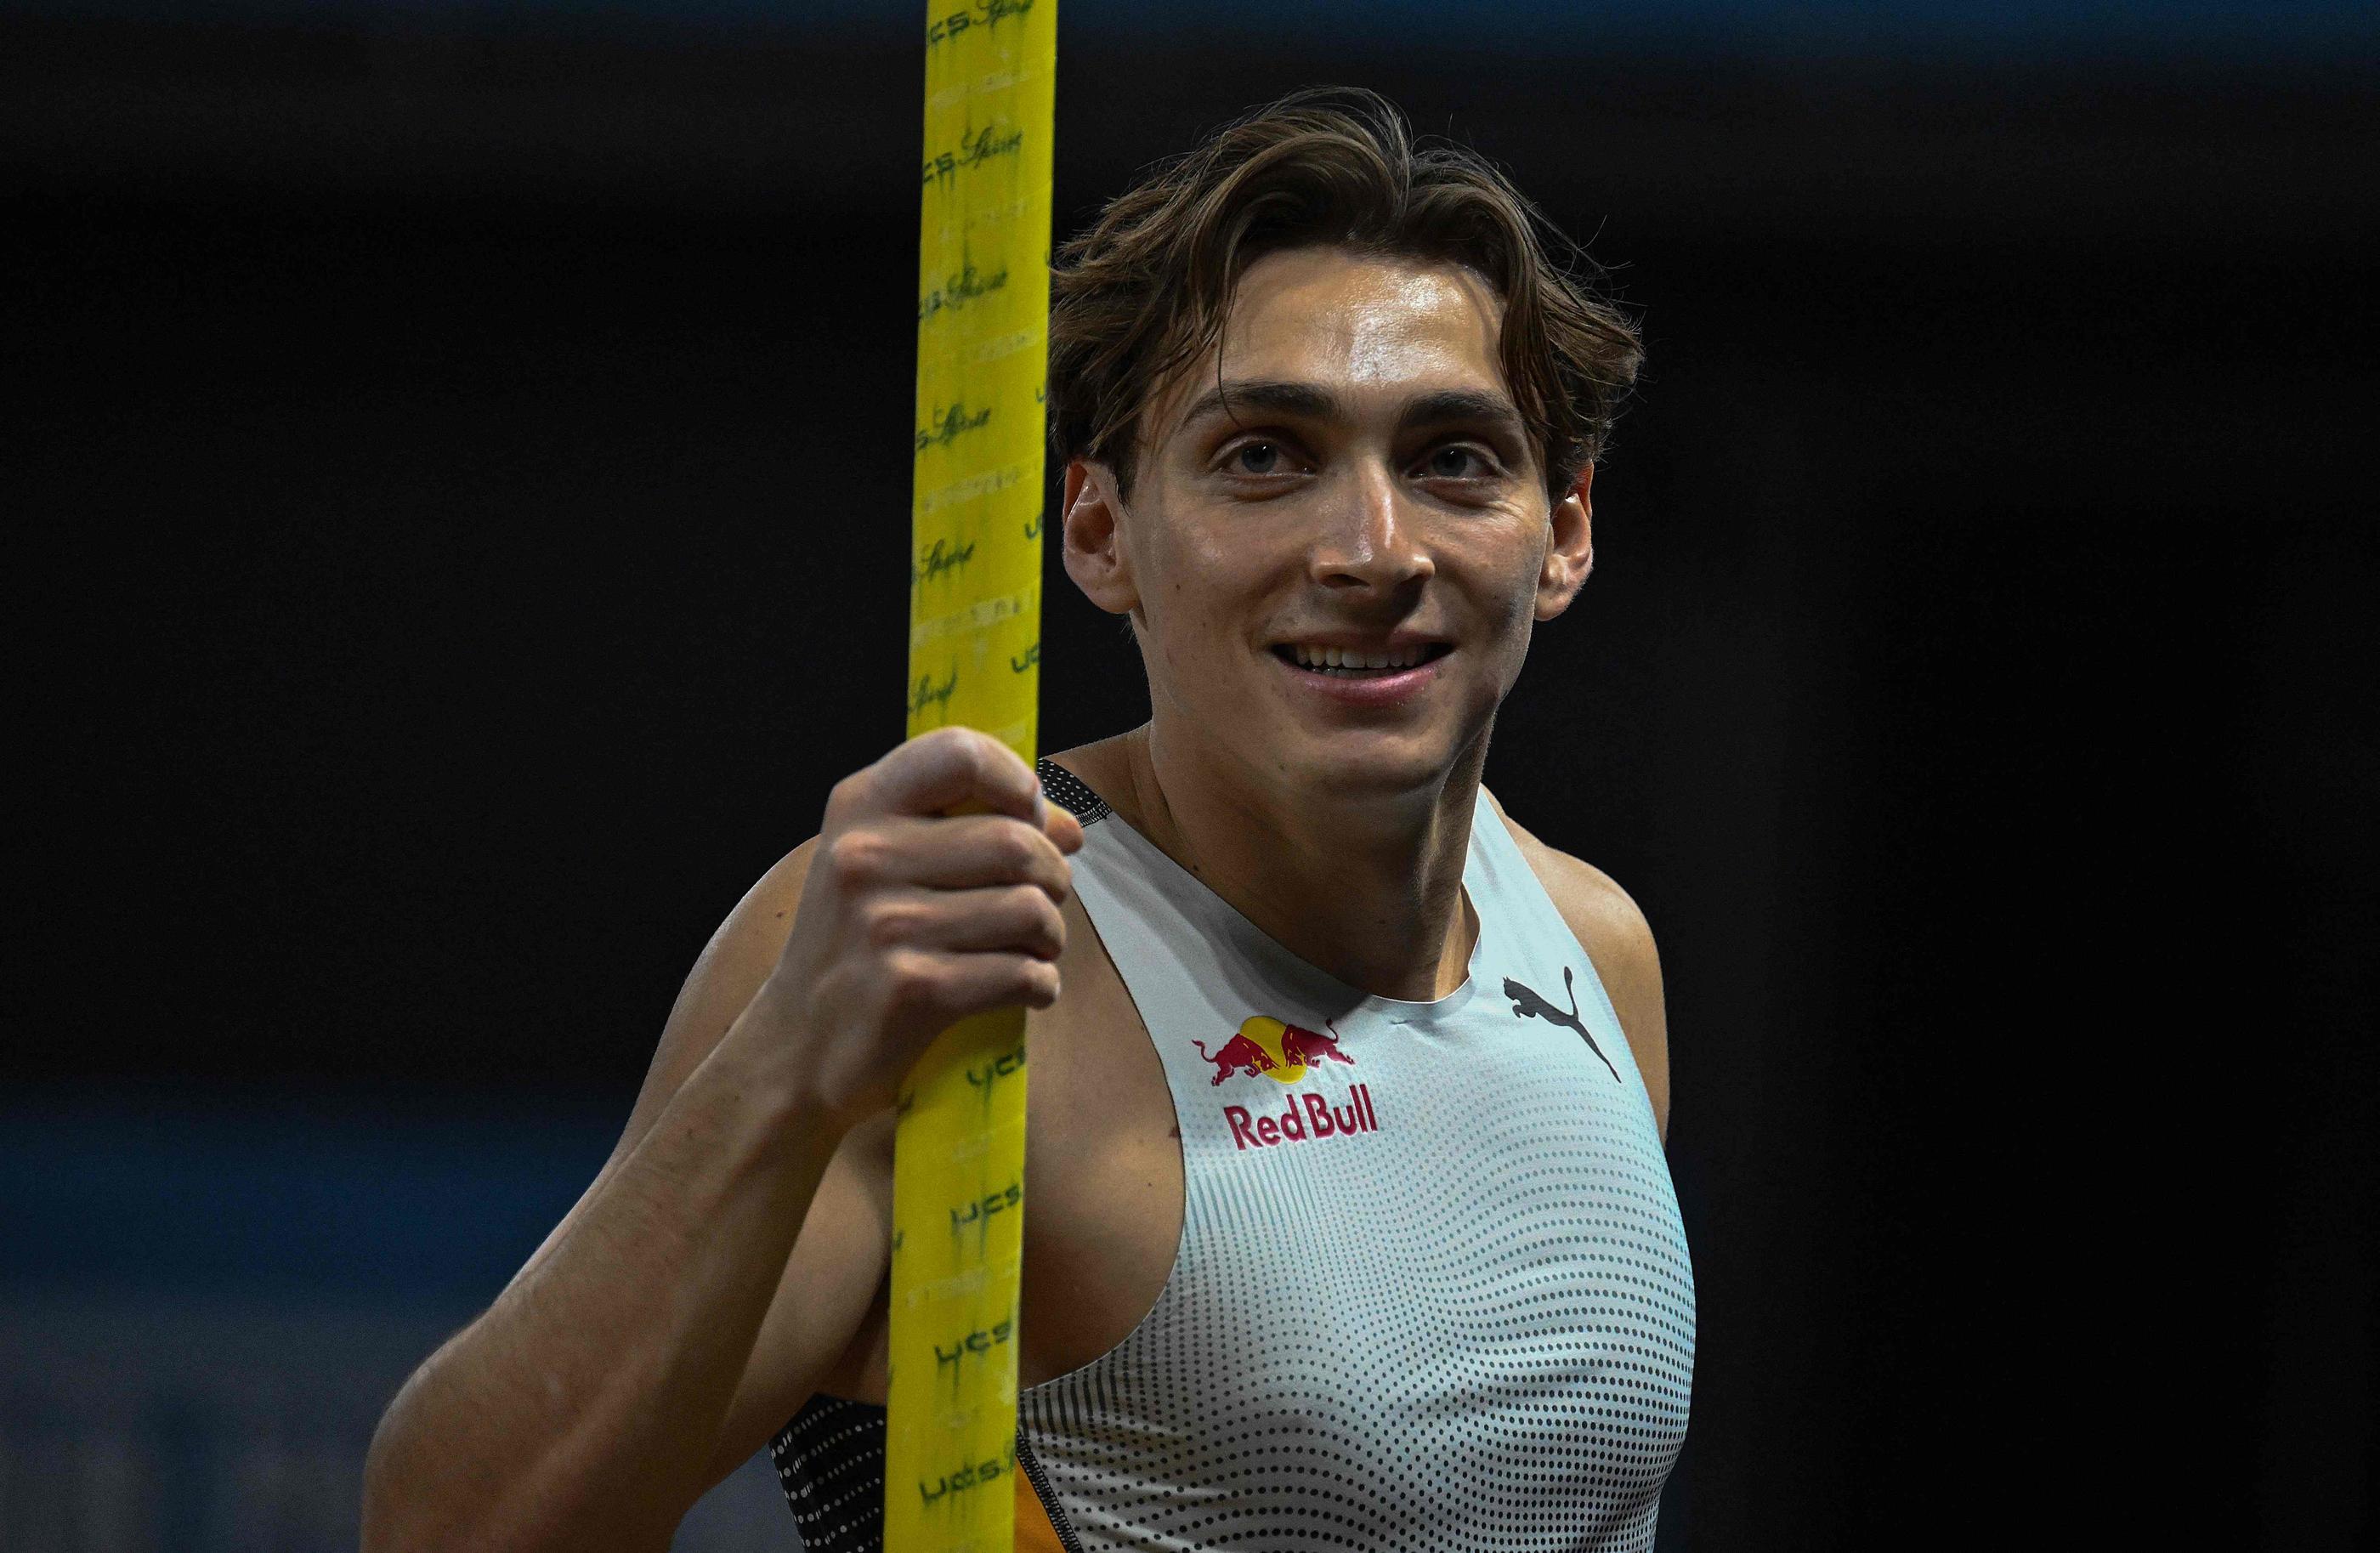 Le Suédois Armand Duplantis a réalisé la meilleure performance de l'année en franchissant 6,02 m à  Clermont-Ferrand. AFP